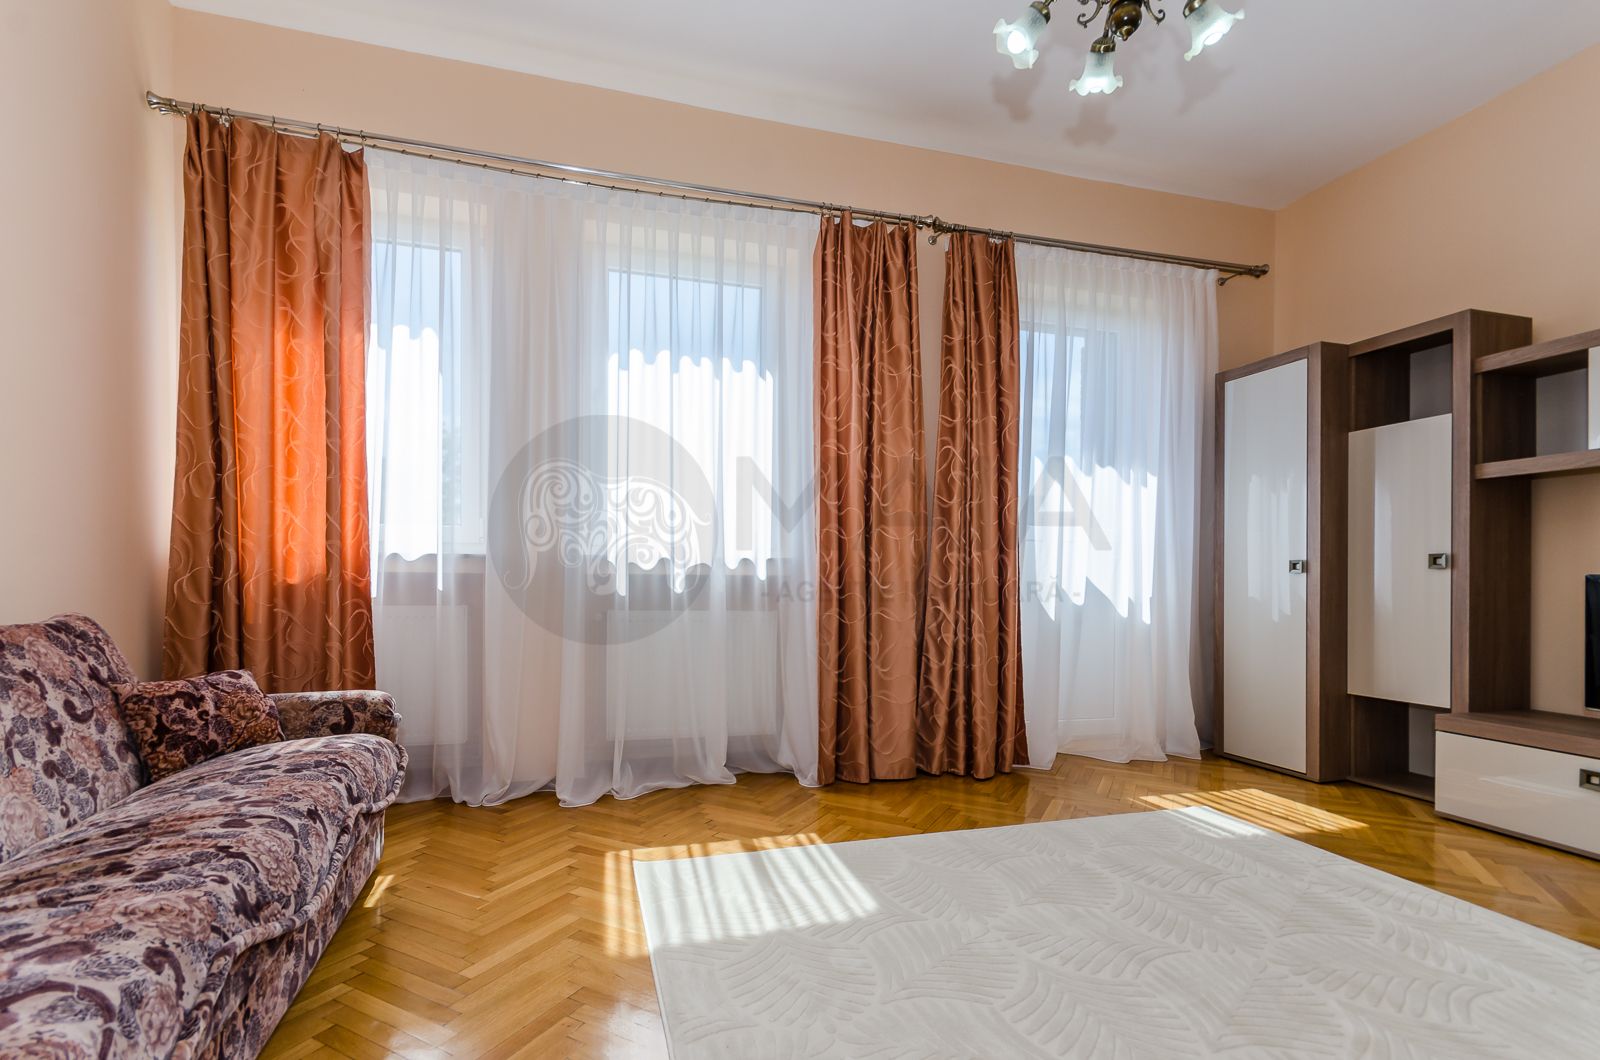 Apartament 2 camere renovat complet, lift, Ultracentral - N.Balcescu